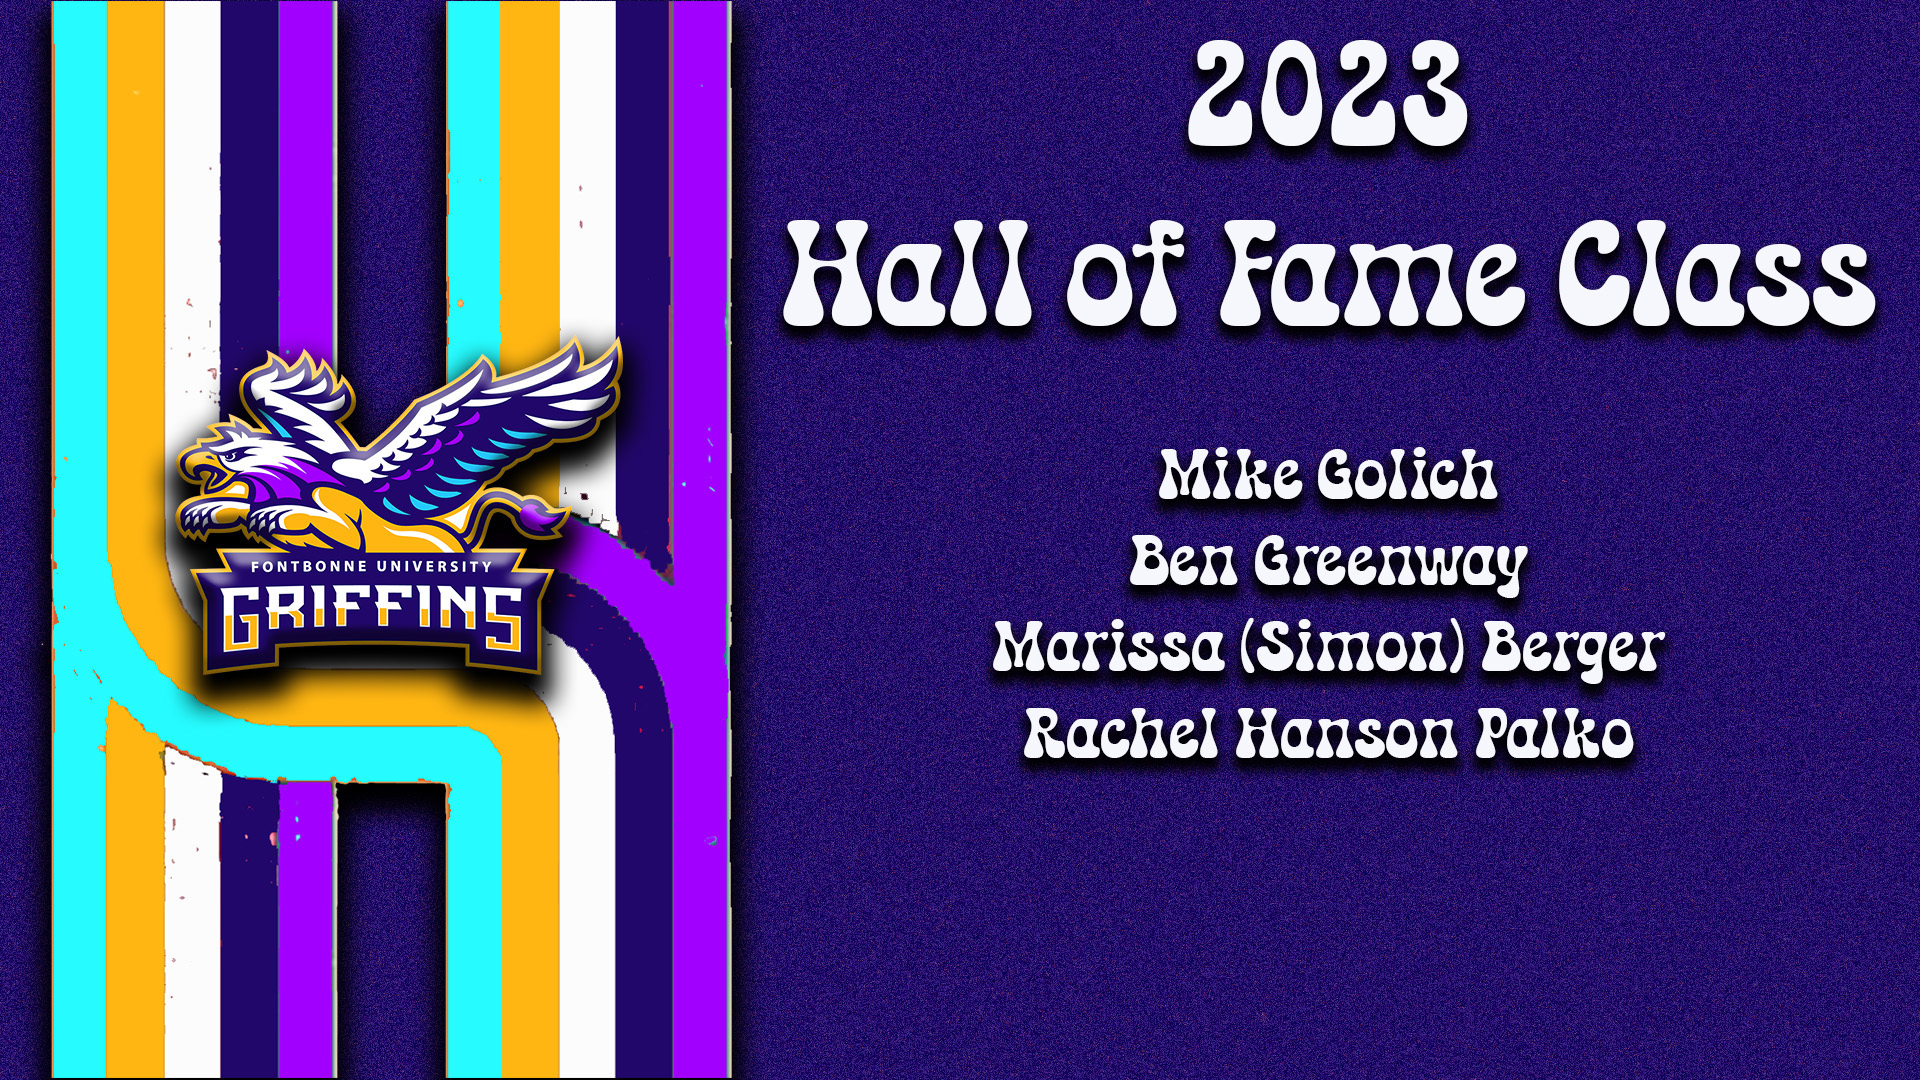 Fontbonne Announces 2023 Hall of Fame Class